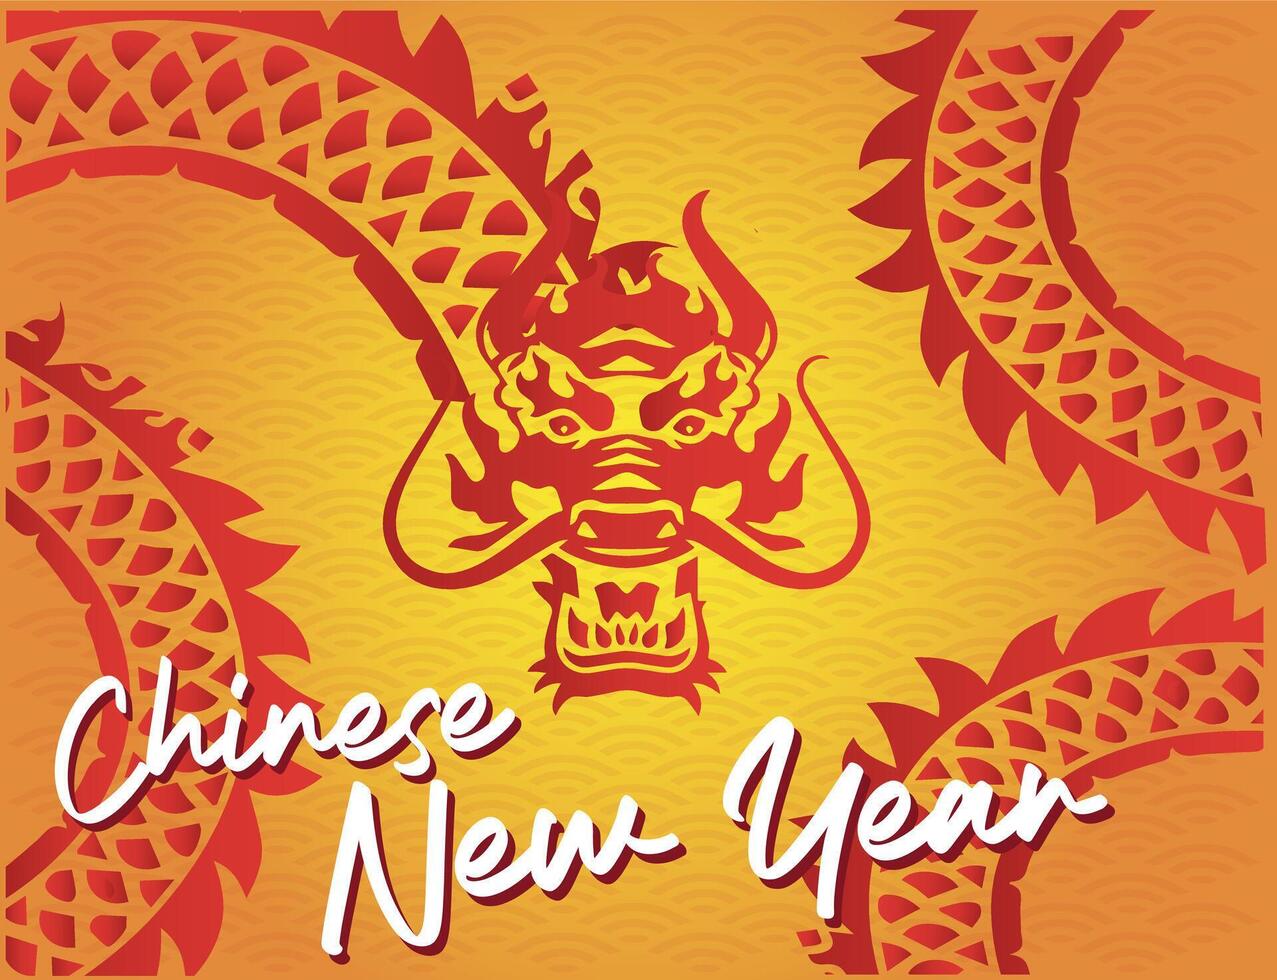 vetor do a dragão face rabo corpo dentro vermelho silhueta gradiente enfeite fundo do laranja e amarelo luz solar a comemorar chinês Novo ano